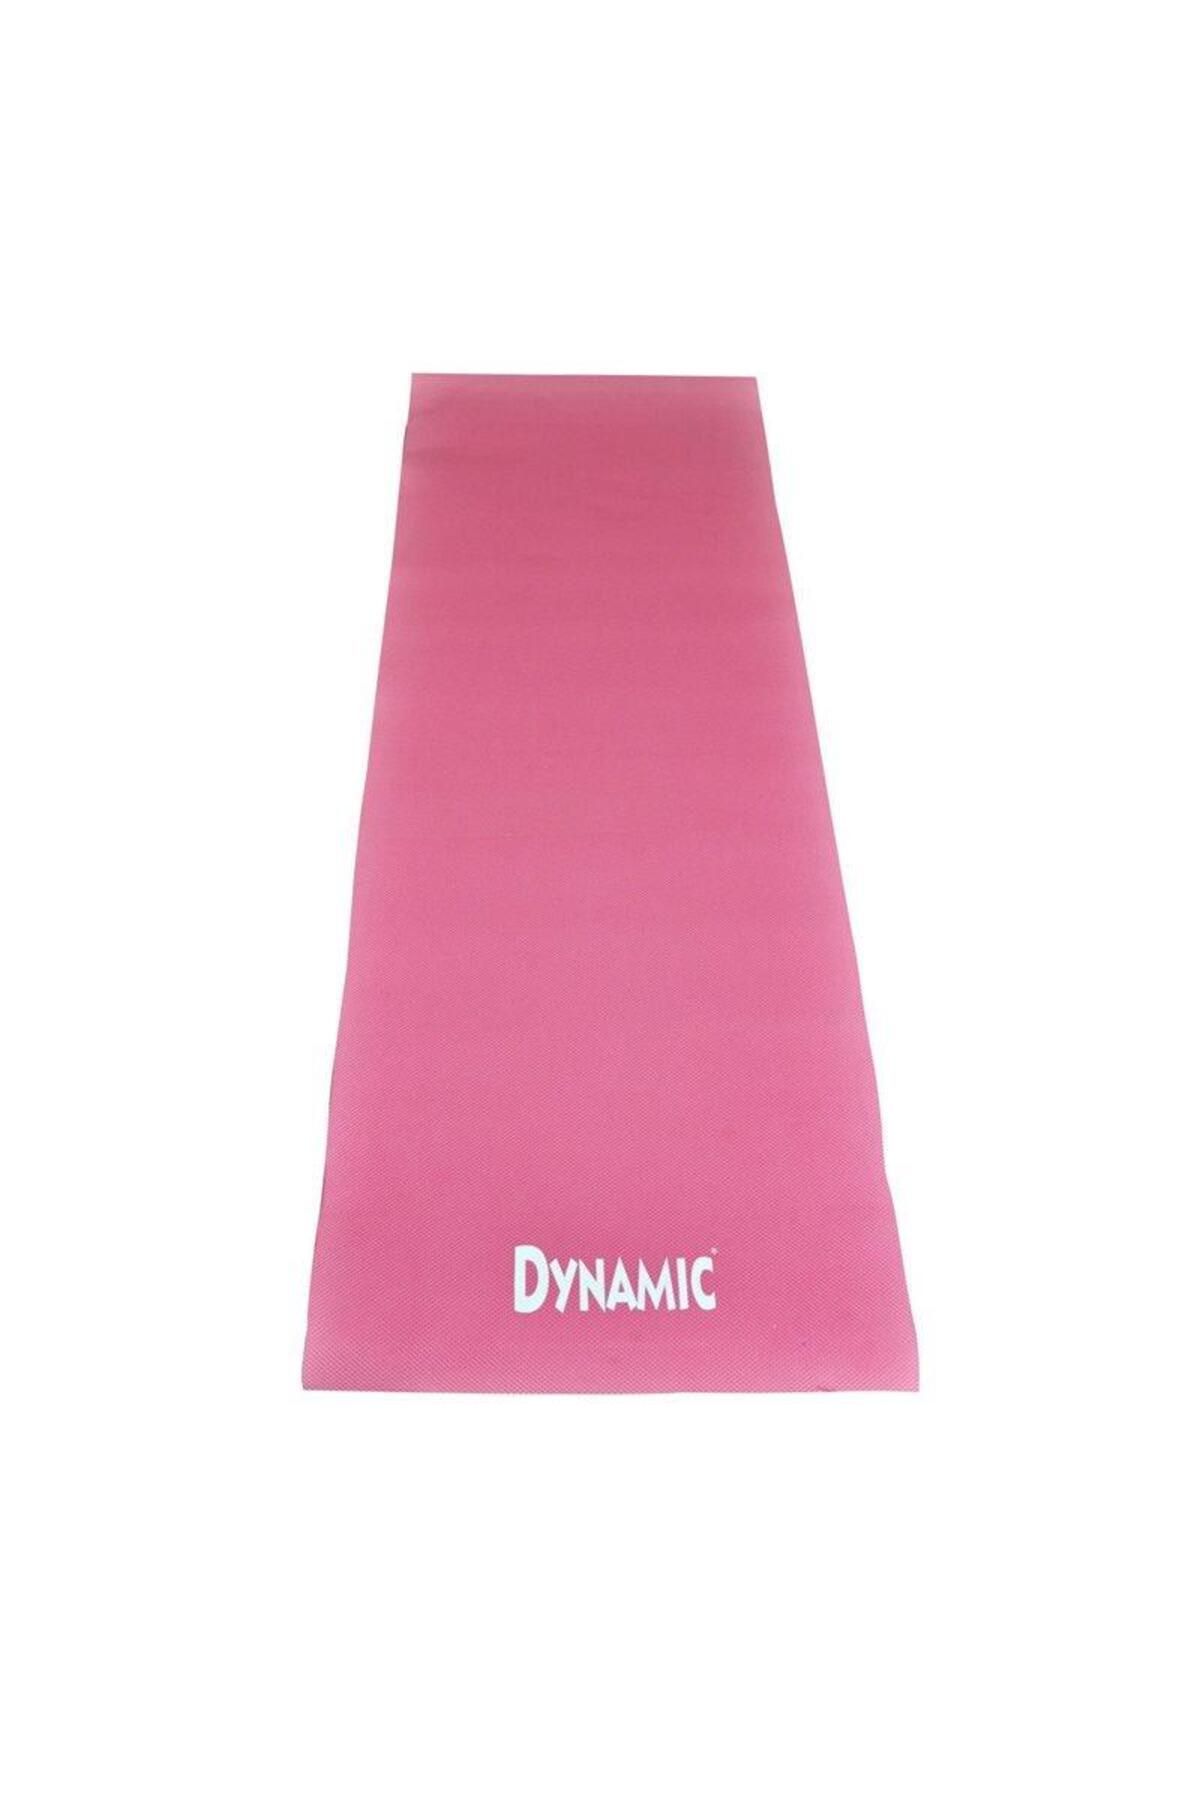 Dynamic Eva Yoga Mat